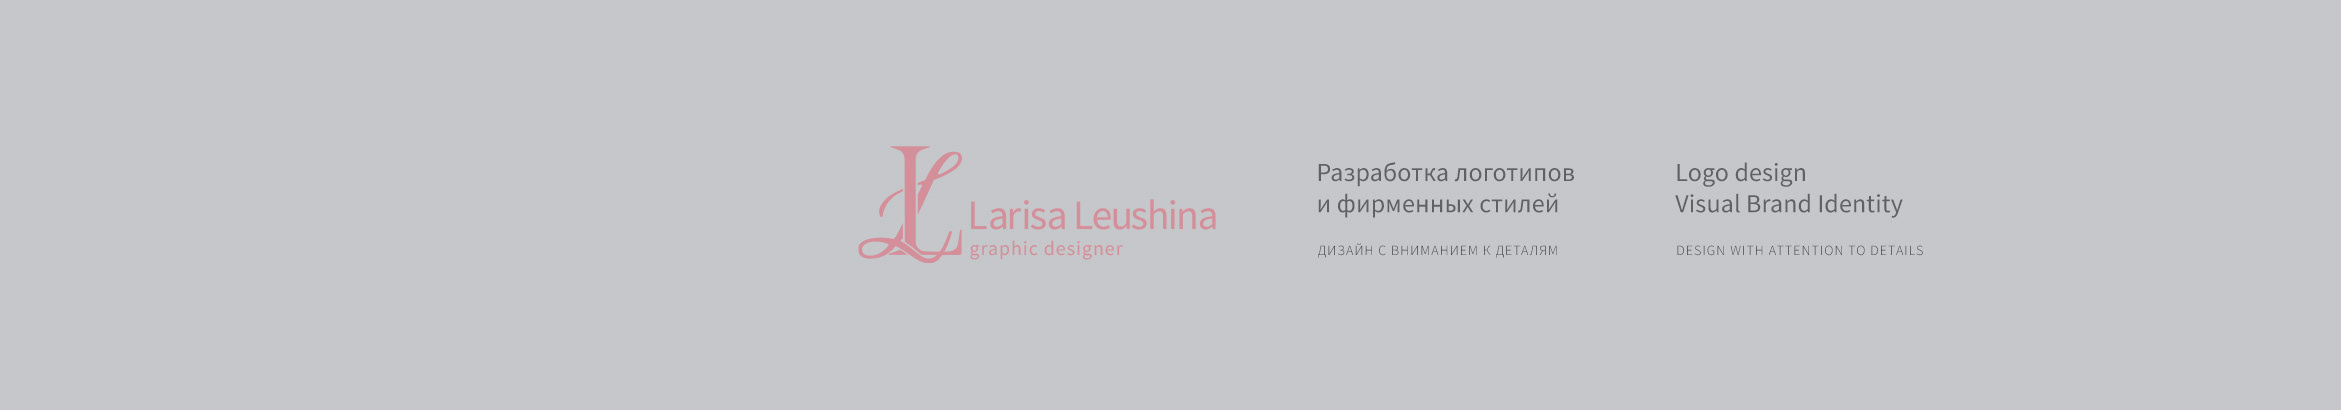 Banner profilu uživatele Larisa Leushina